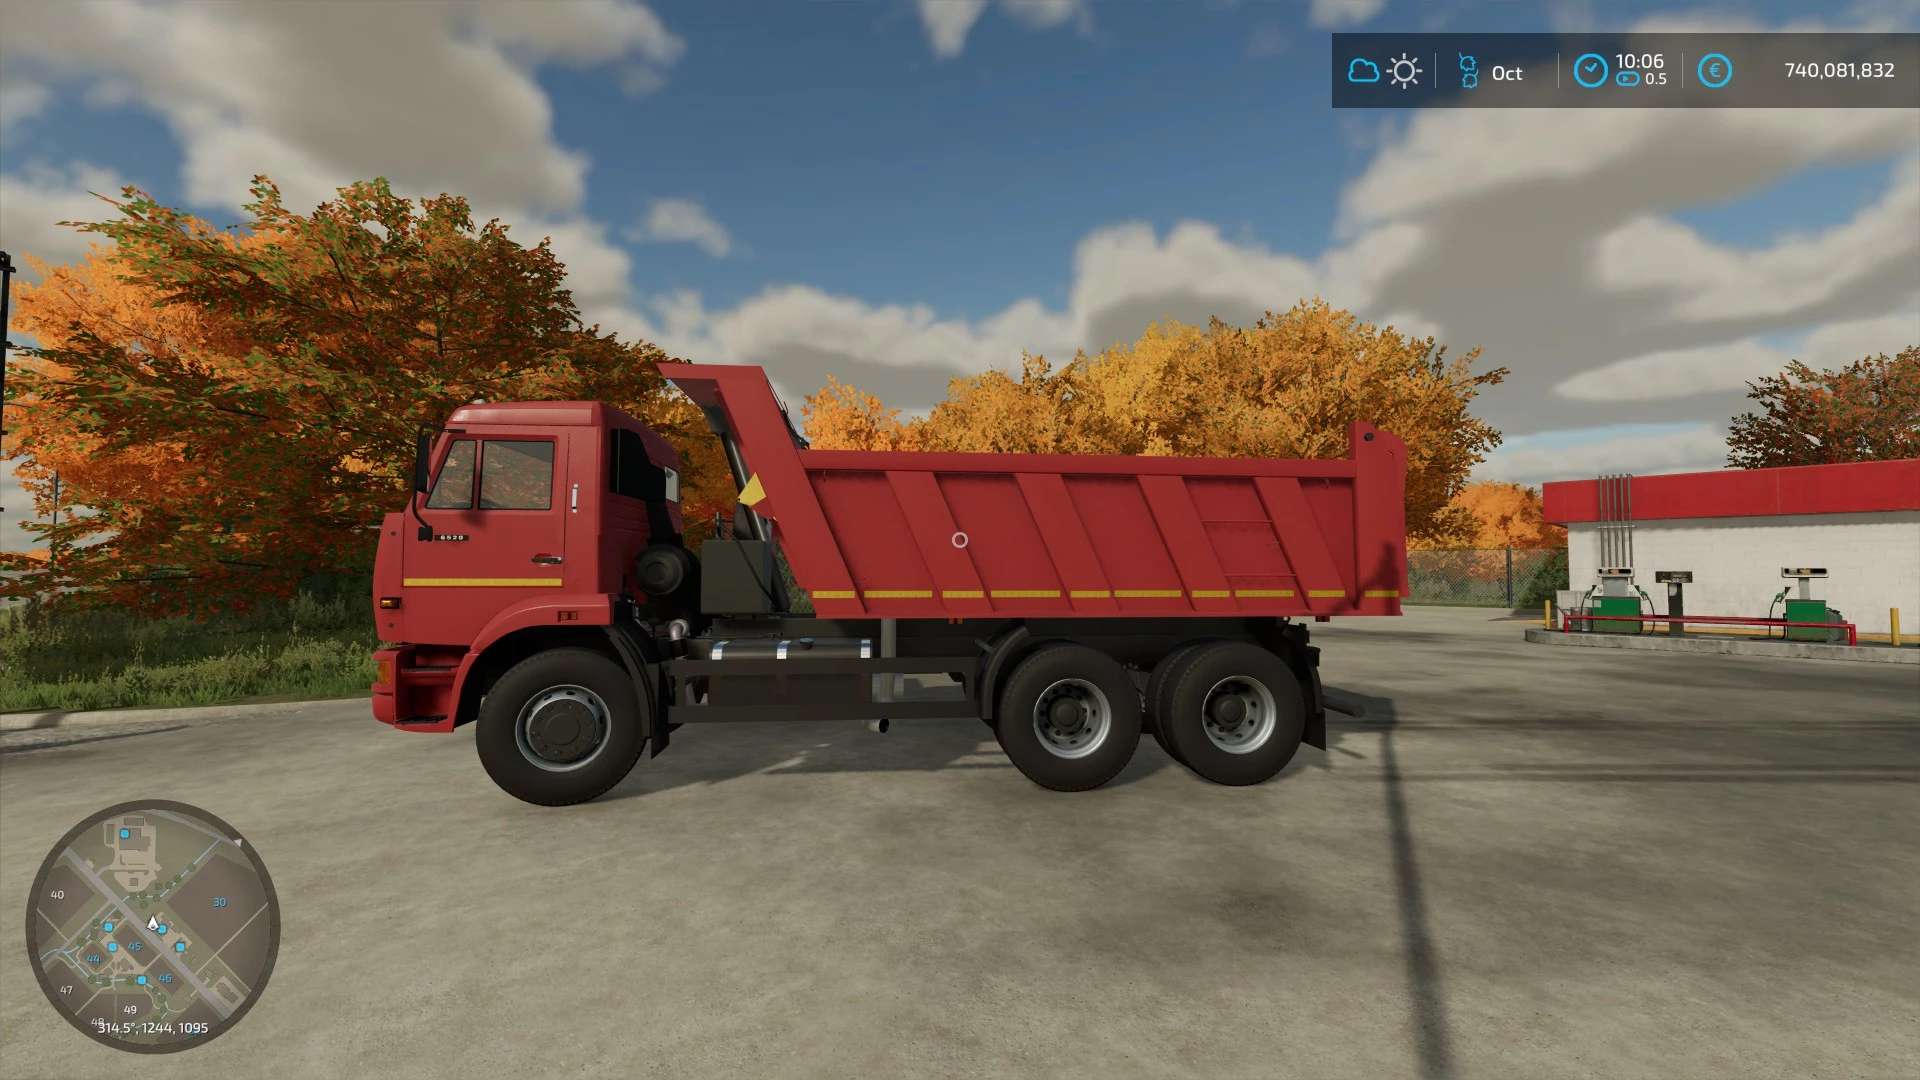 Kamaz 6520 Dump Truck V11 For Fs22 Farming Simulator 2022 19 Mod 0775